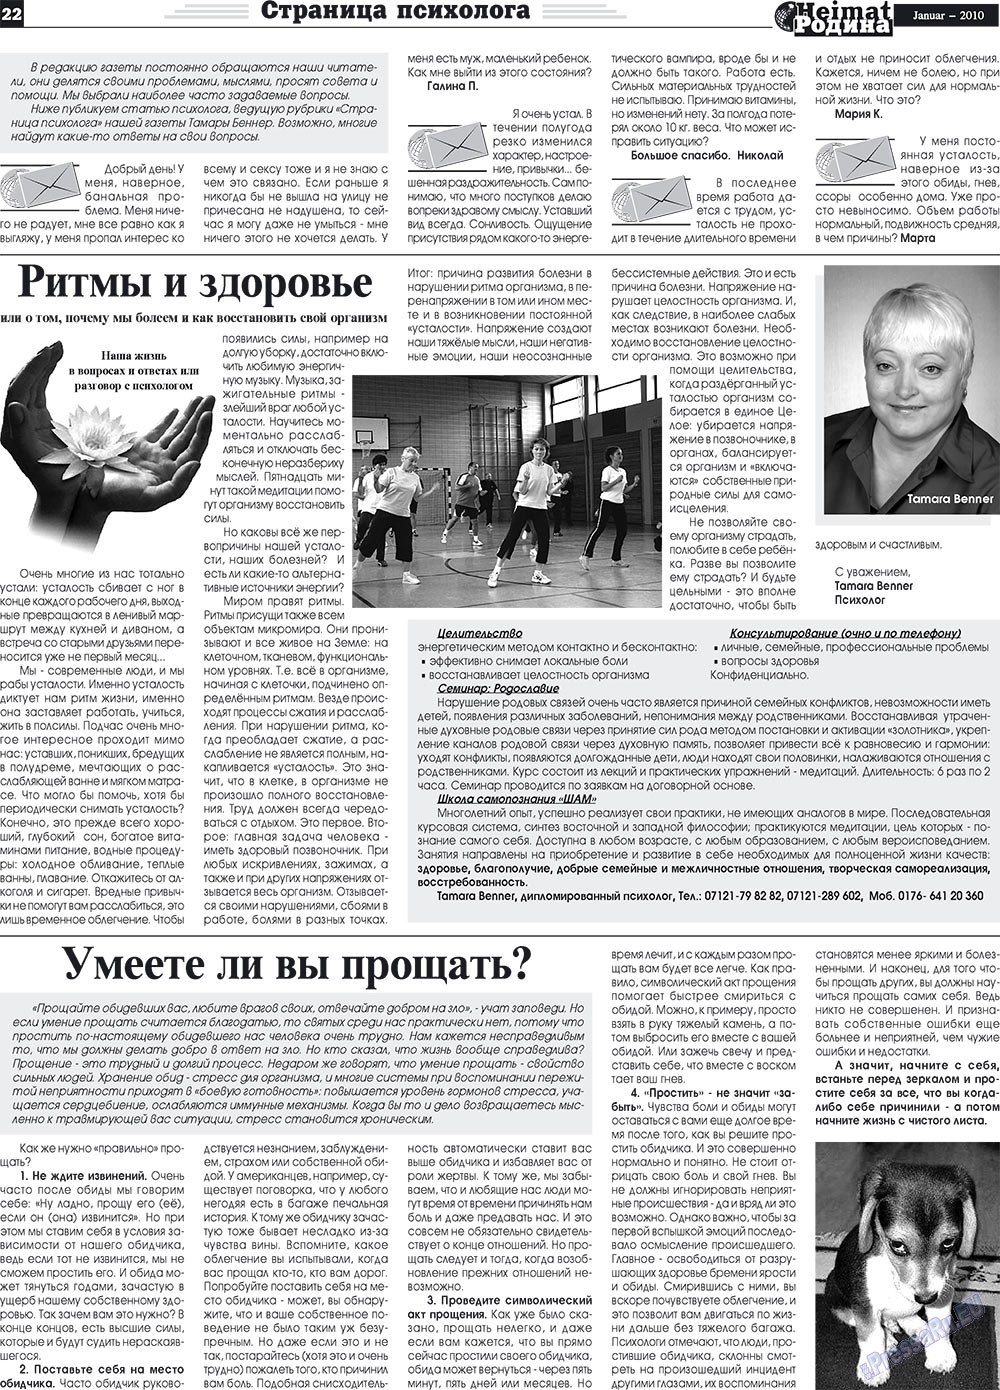 Heimat-Родина (газета). 2010 год, номер 1, стр. 22